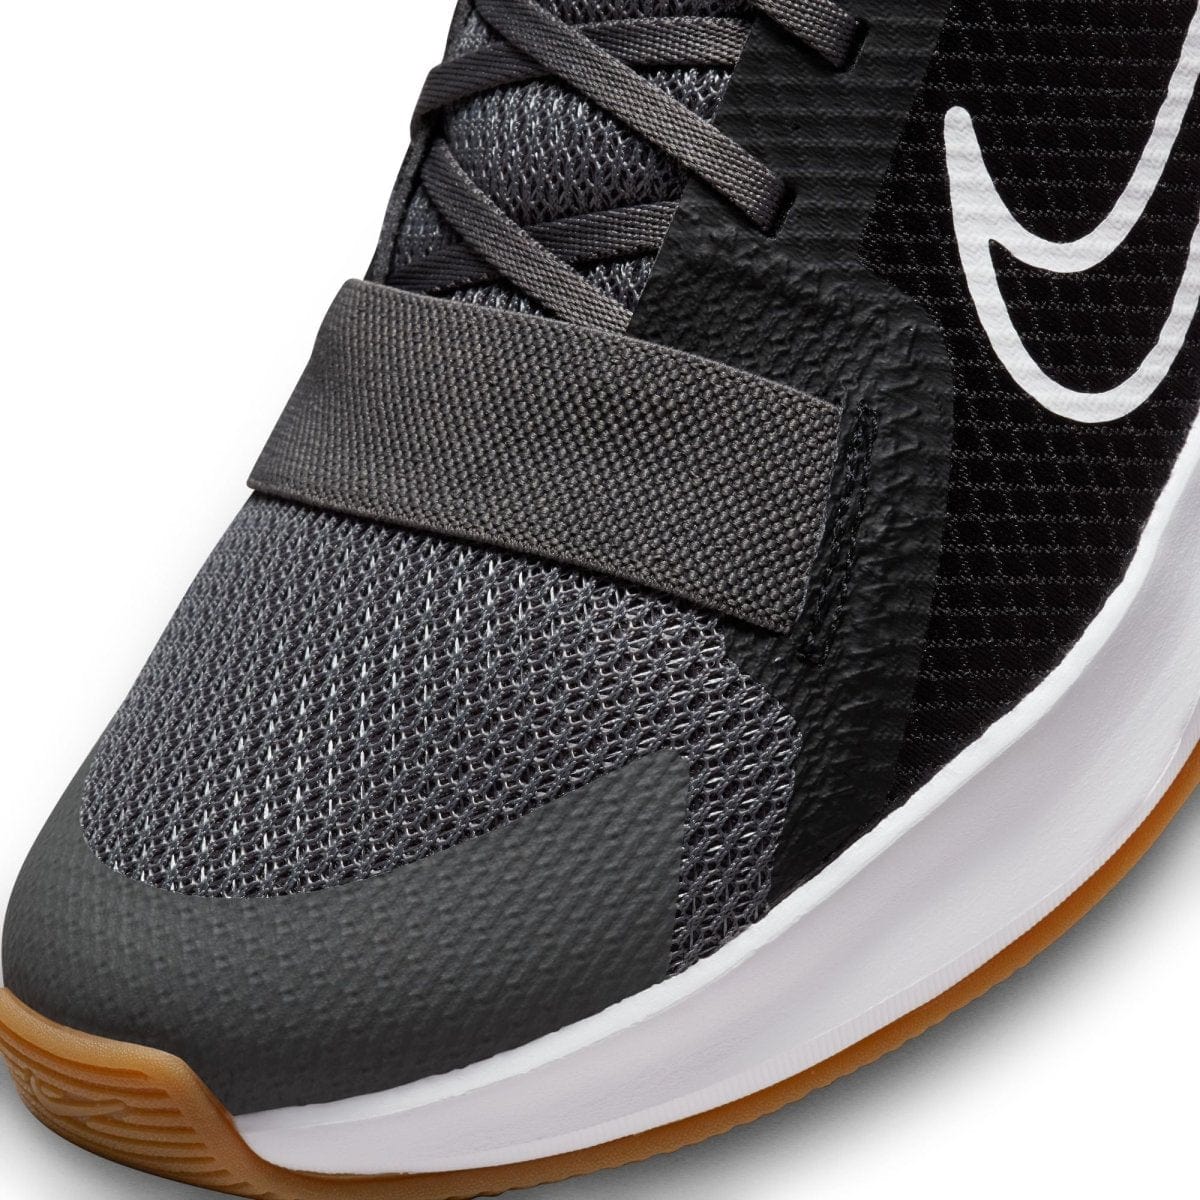 Nike NIKE MEN'S MC TRAINER 2 BLACK TRAINING SHOES - INSPORT